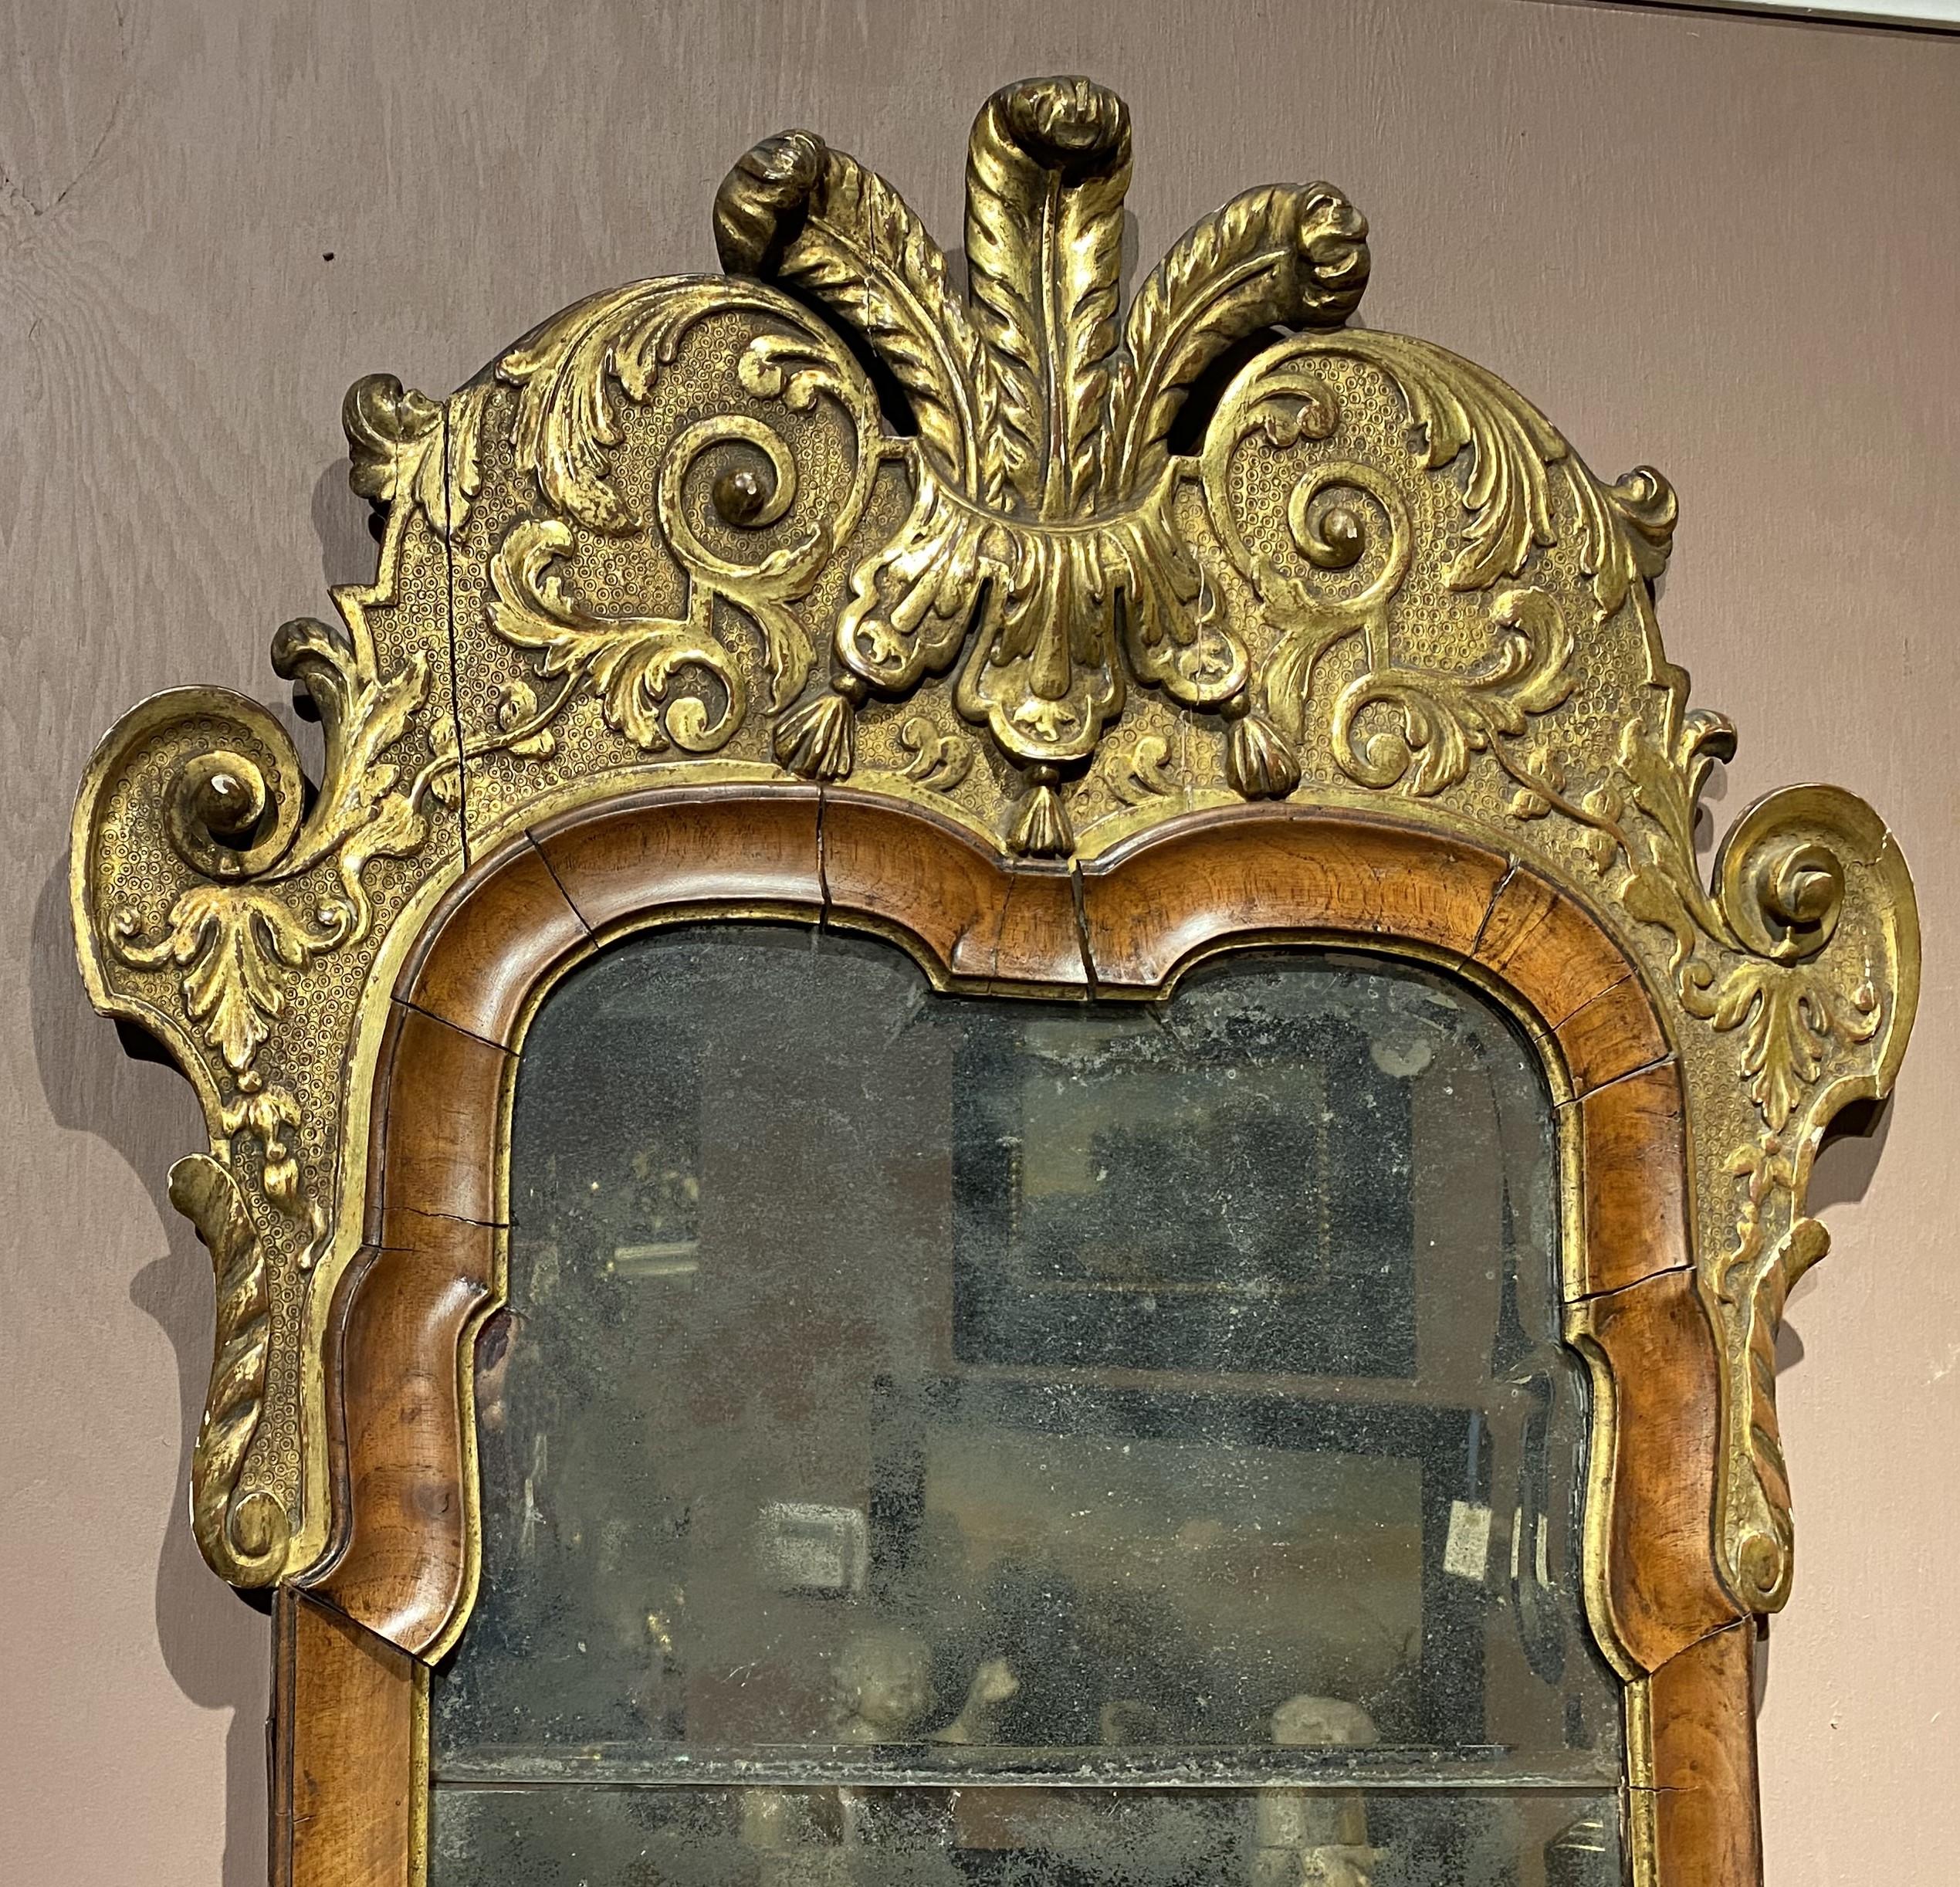 Ein schönes Beispiel für einen englischen Nussbaum- und Mahagoni-Spiegel aus dem 18. Jahrhundert mit originaler Spiegelplatte und vergoldetem, geschnitztem Wappen mit der Feder des Prinzen von Wales. Der Spiegel ist in einem guten Gesamtzustand, mit